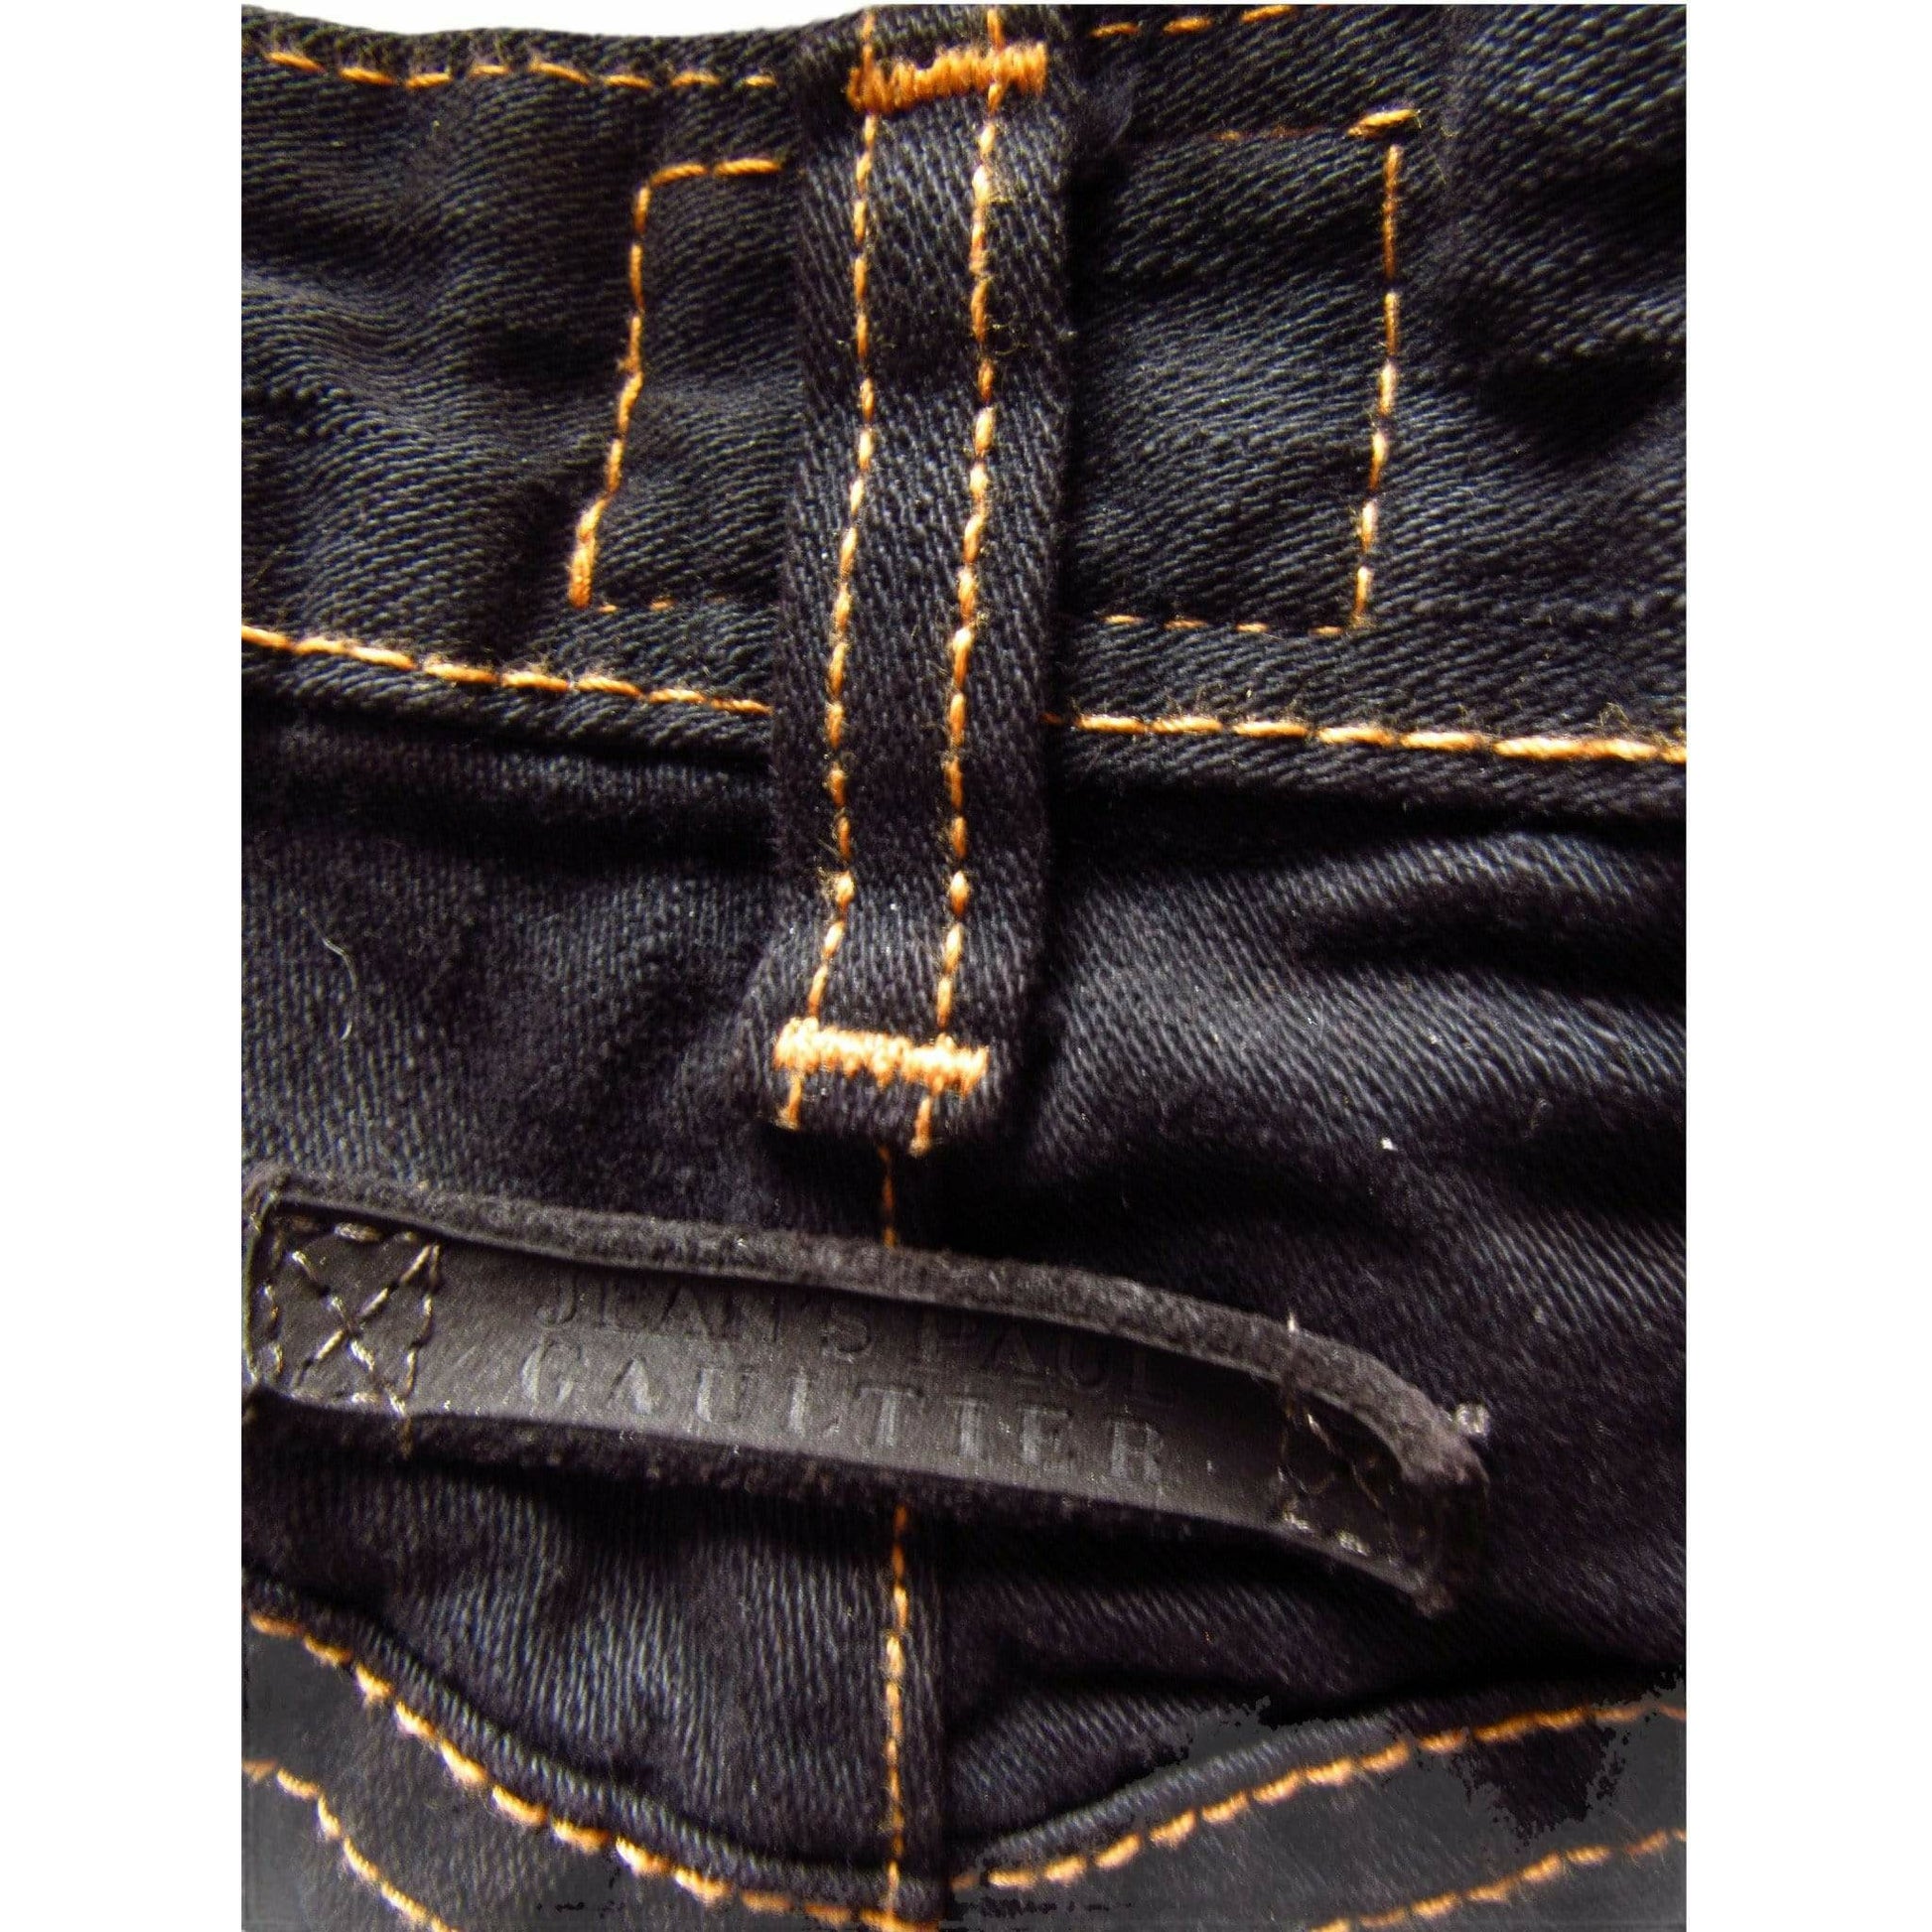 Pants jean-paul-gaultier-dark-denim-jeans Jean Paul Gaultier Dark Slate Gray